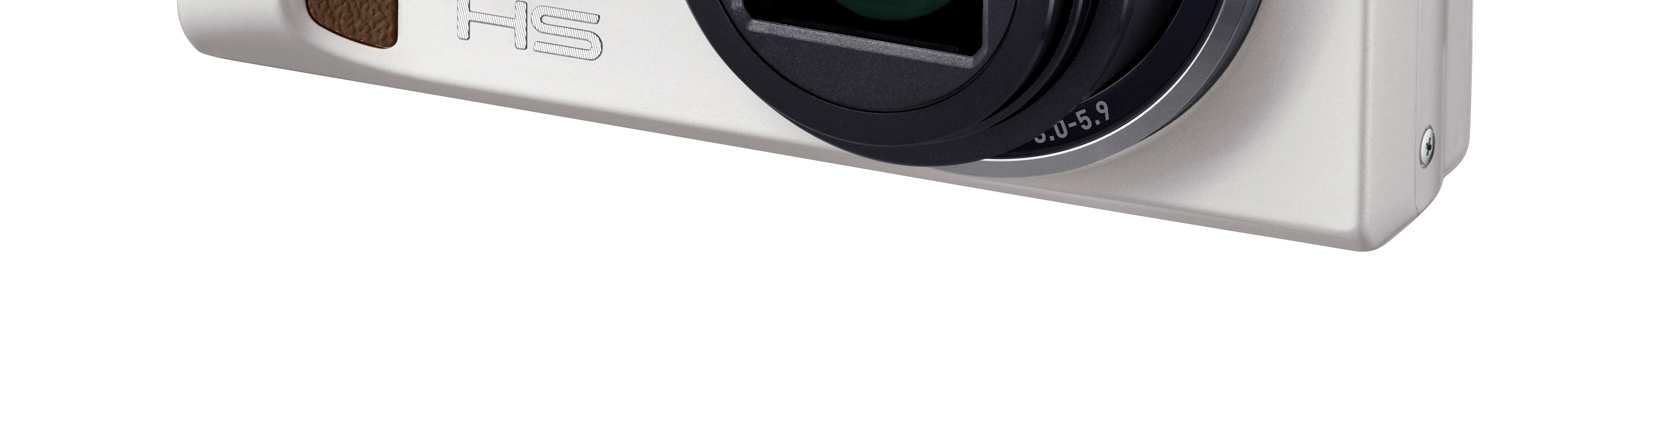 EX-ZR700 är utrustad med en vidvinkel på 25 mm 1 och 18x optisk zoom.